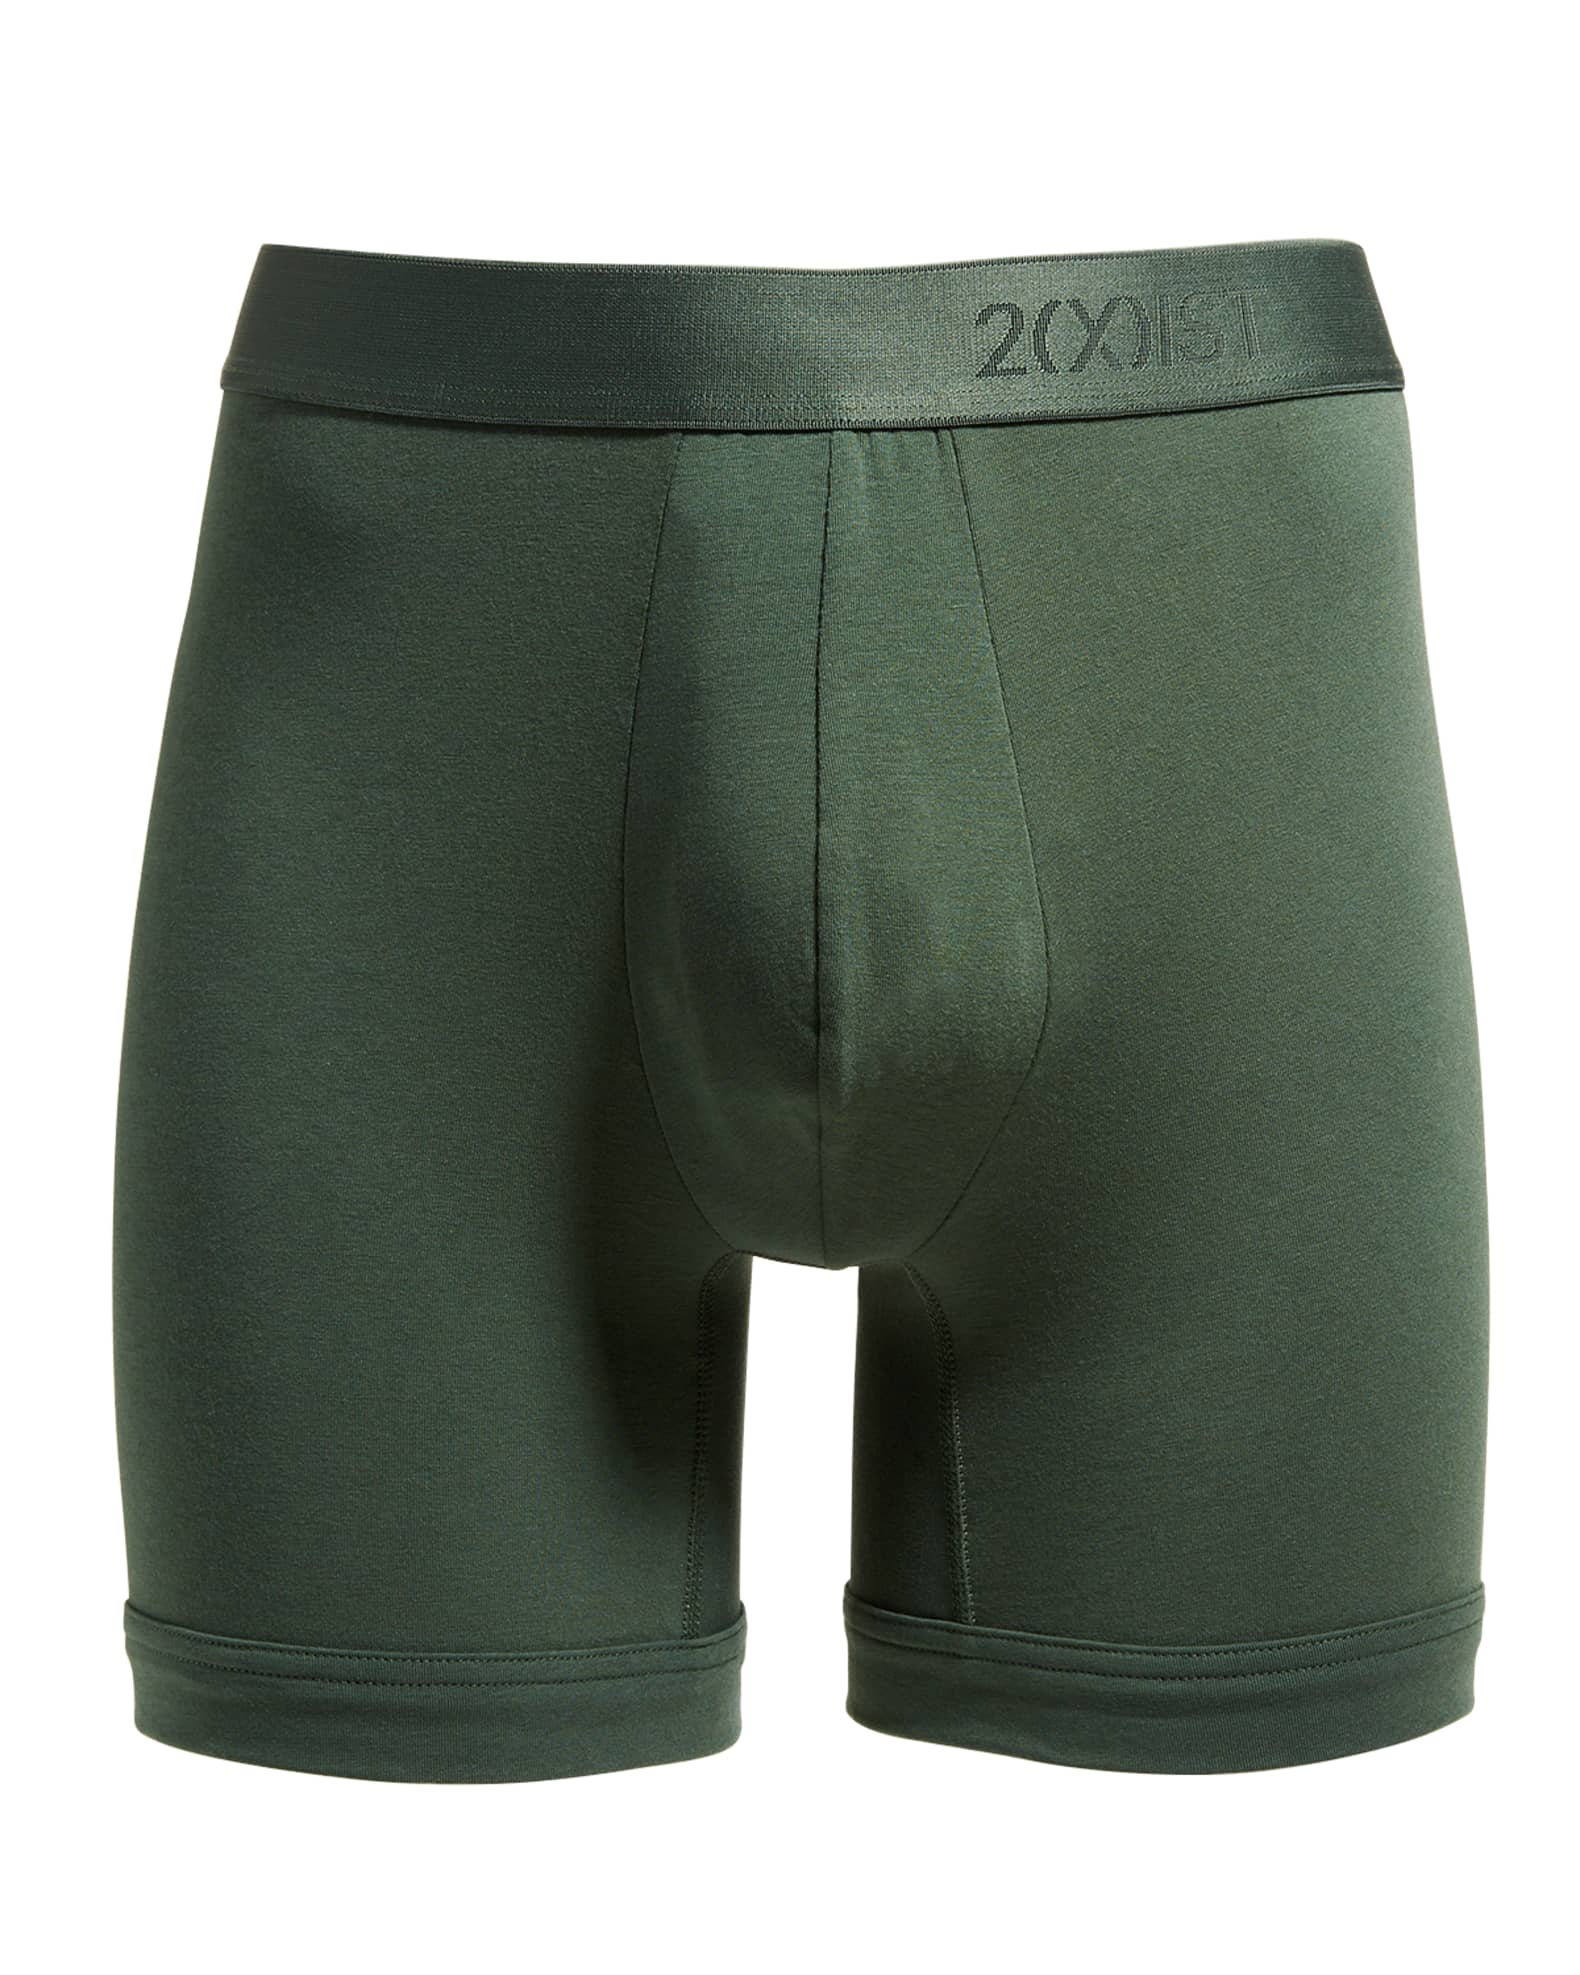 2Xist Men's Soft Modal Boxer Briefs | Neiman Marcus